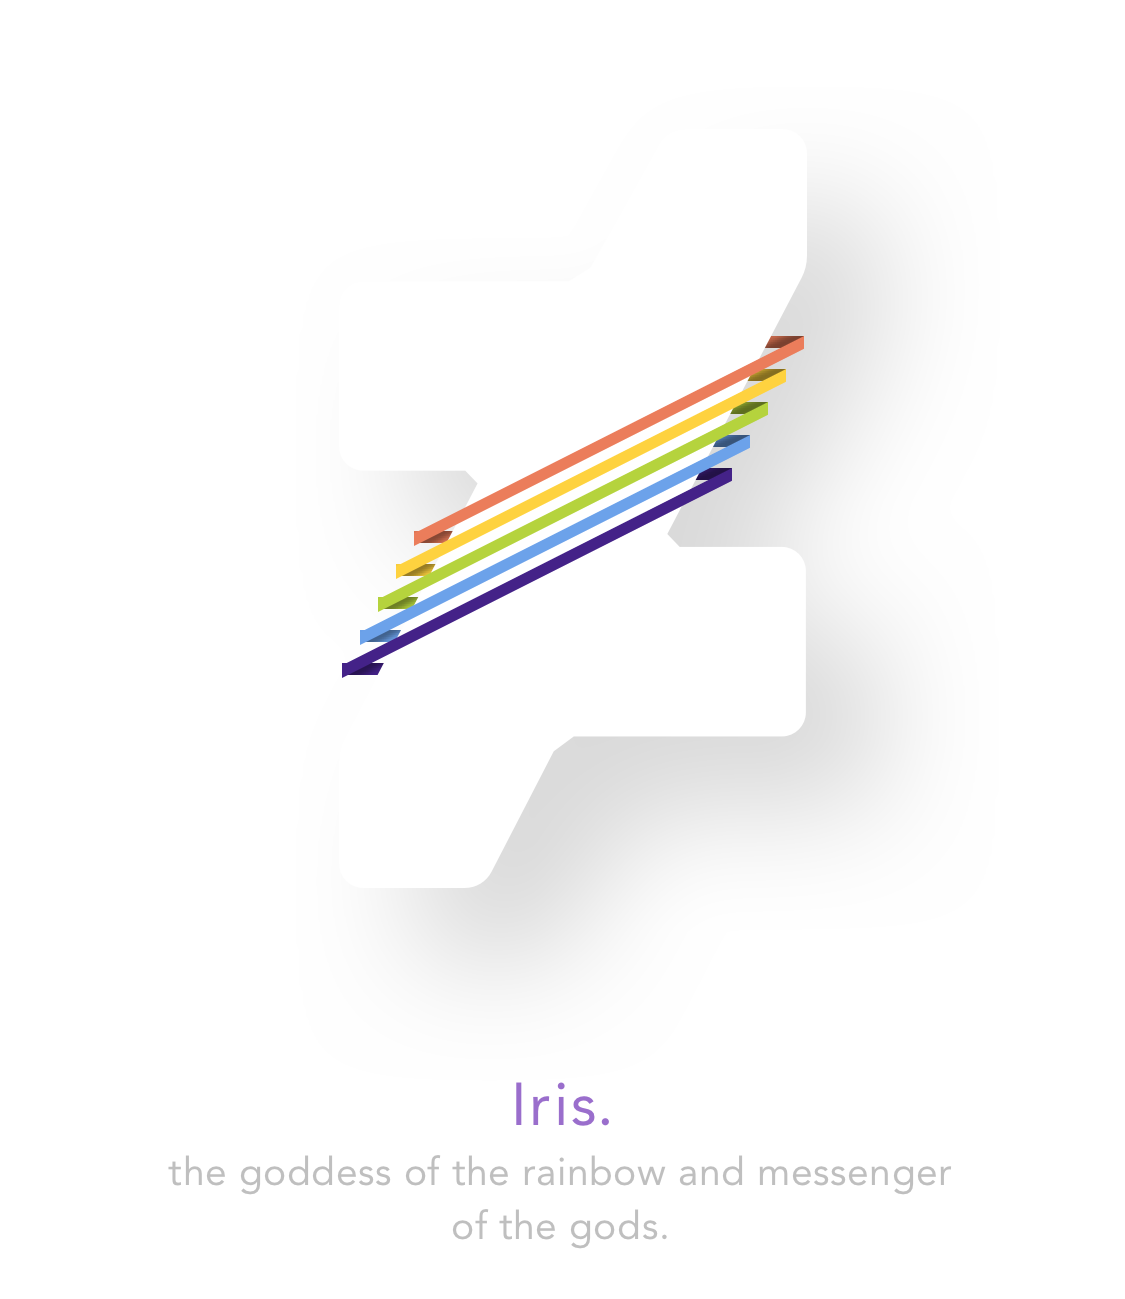 Iris.iOS